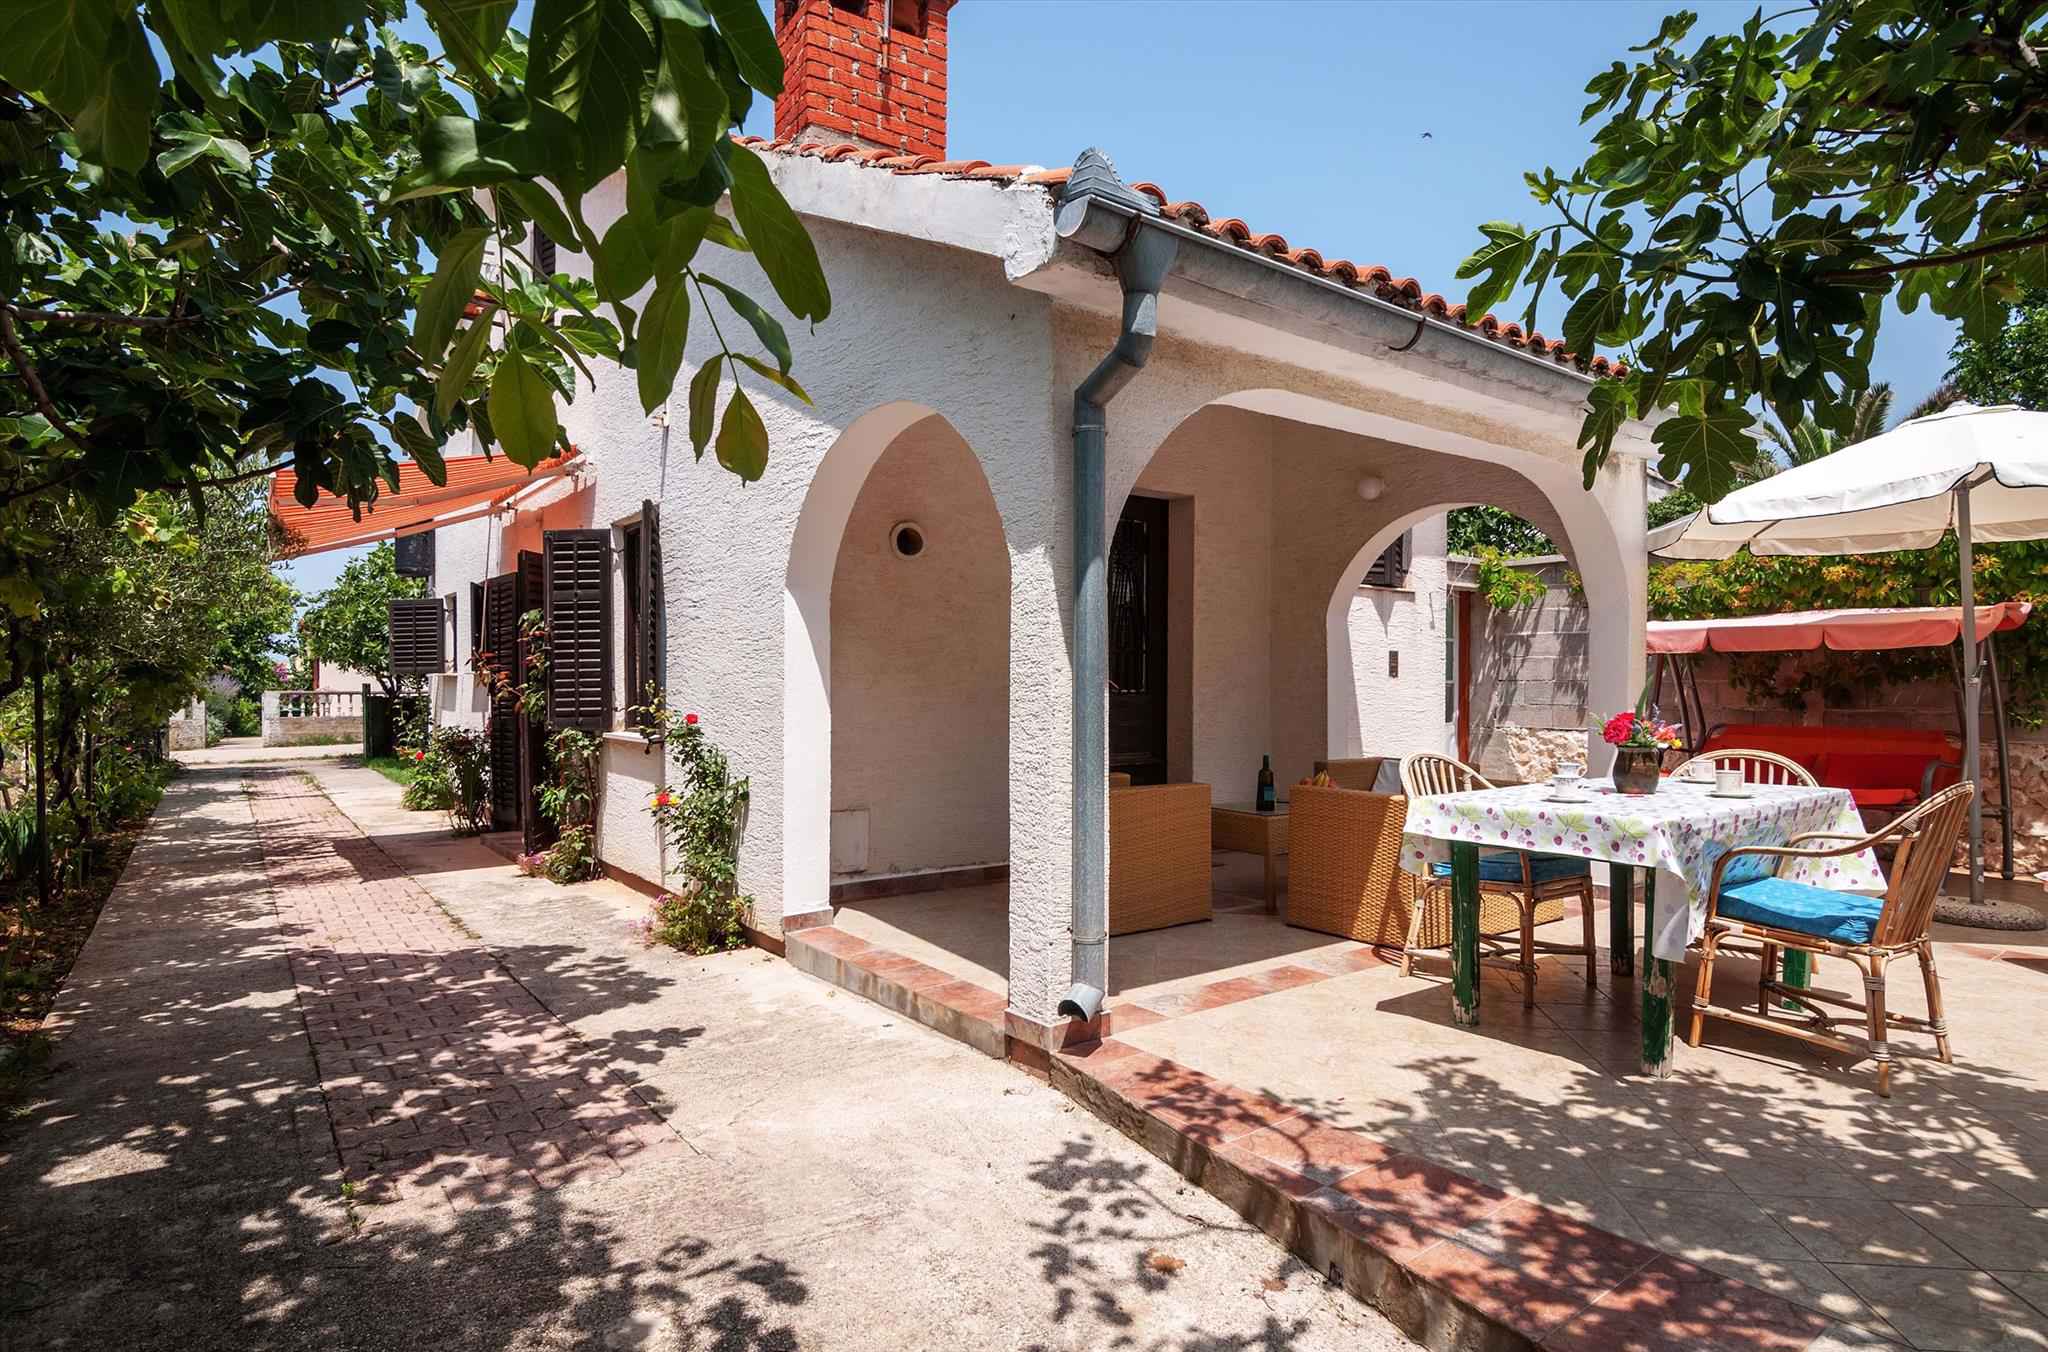 Ferienhaus mit schöner Terrasse Ferienhaus in Dalmatien